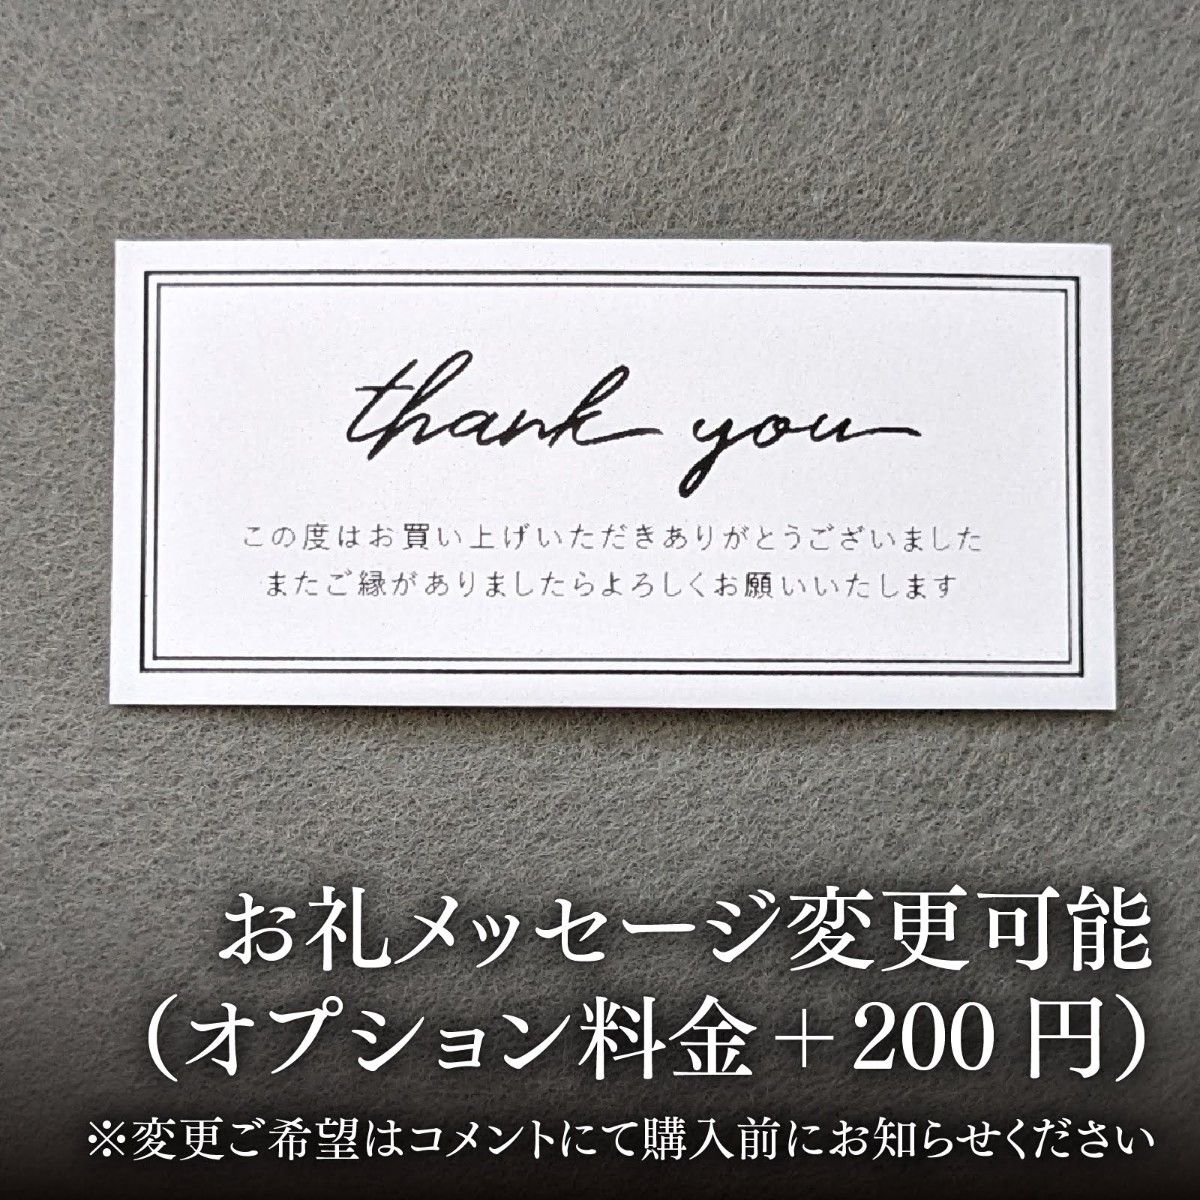 シンプル サンキューカード 小さめ【C】コメント付き 選べる用紙 80枚320円